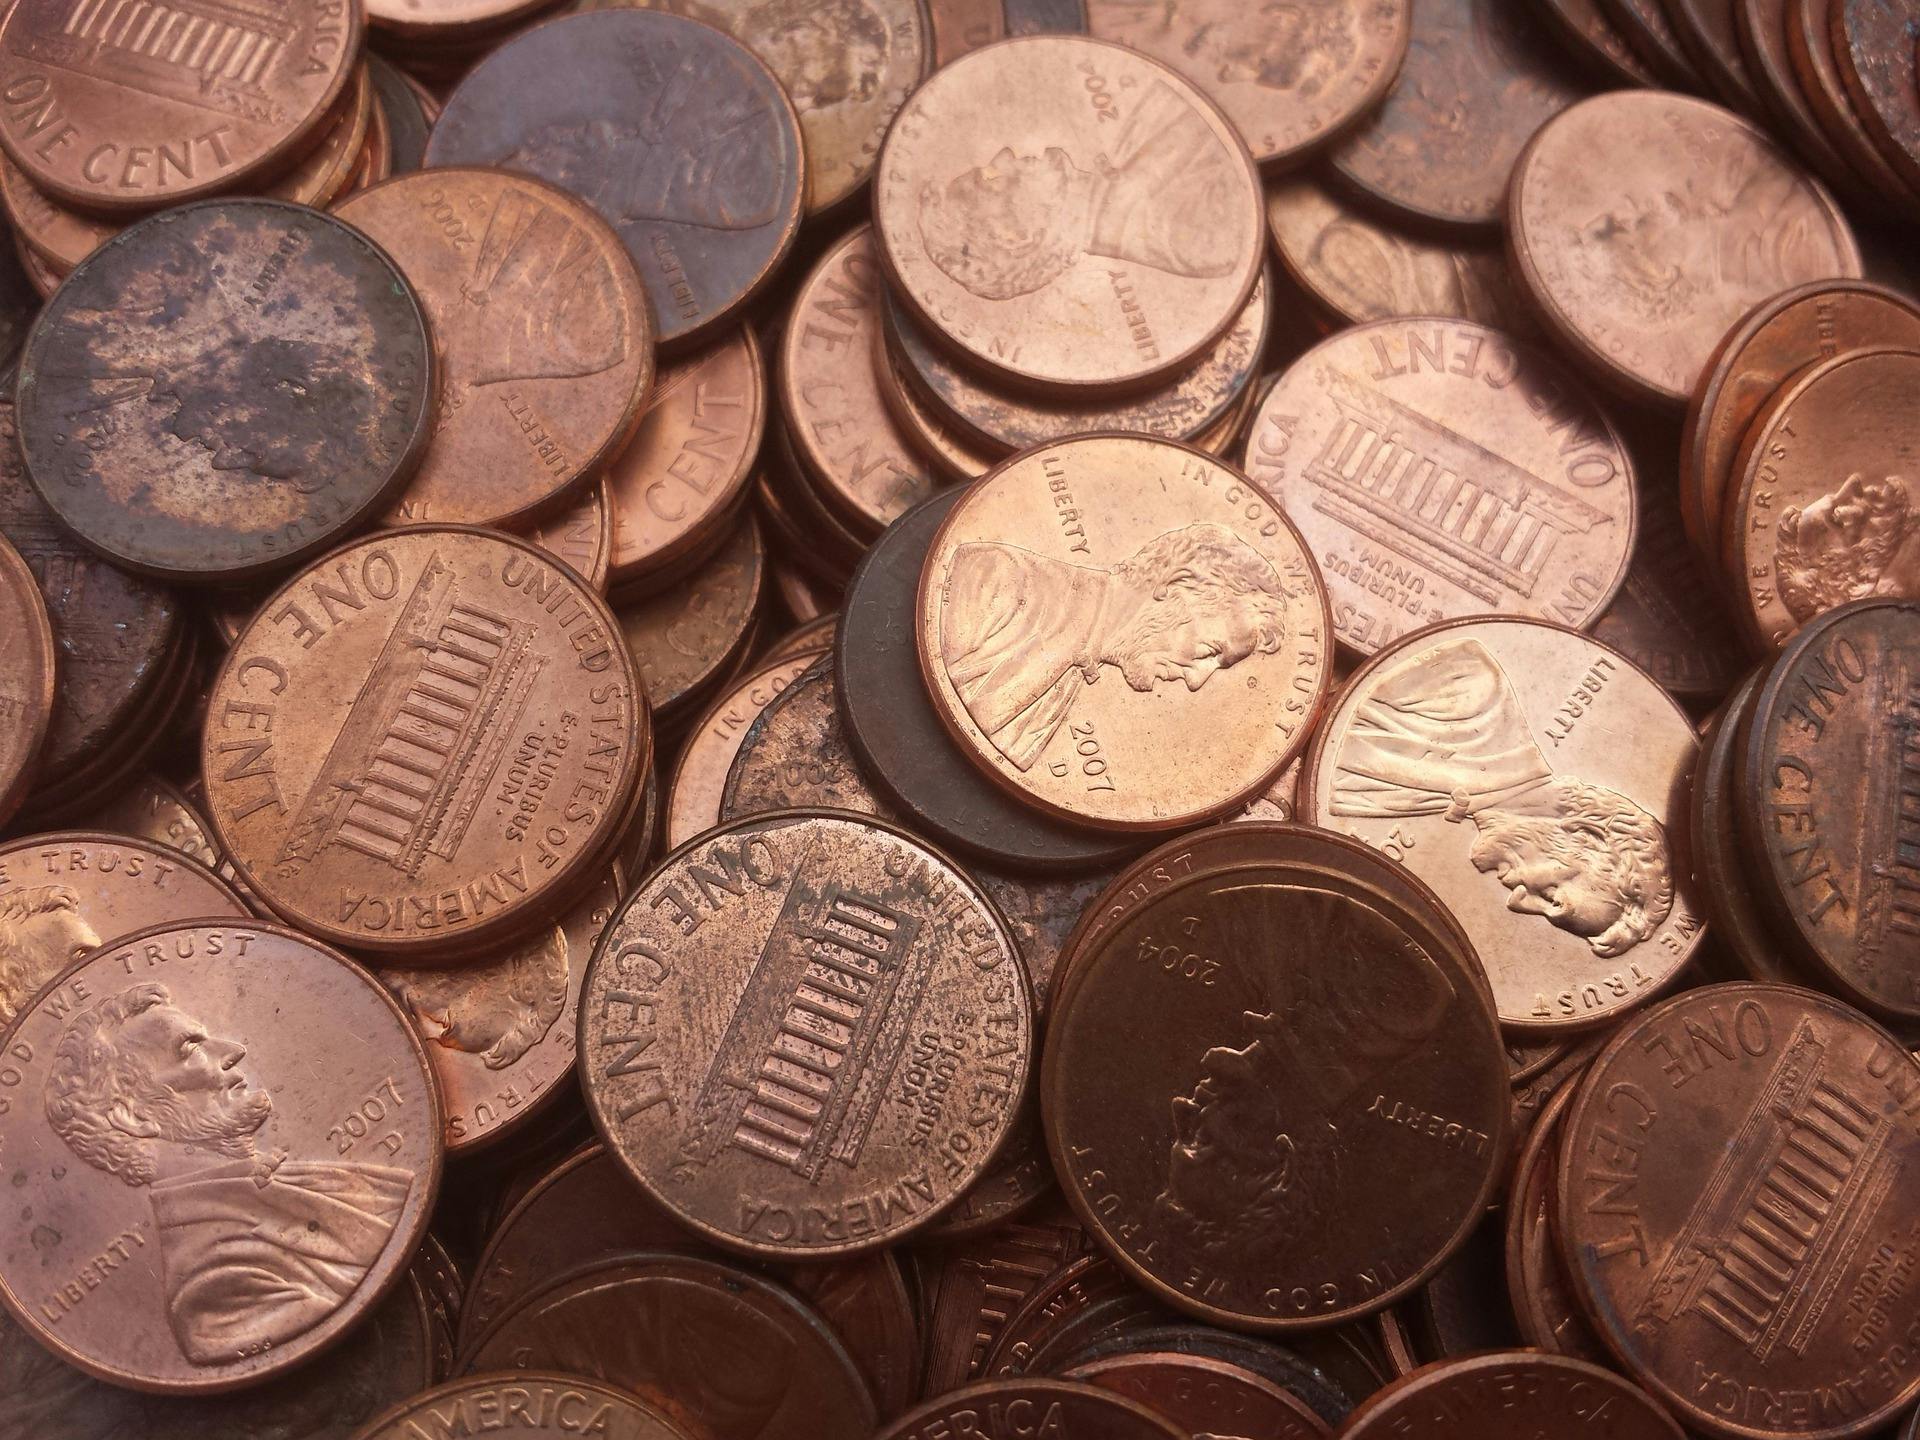 penny-frugal-savings